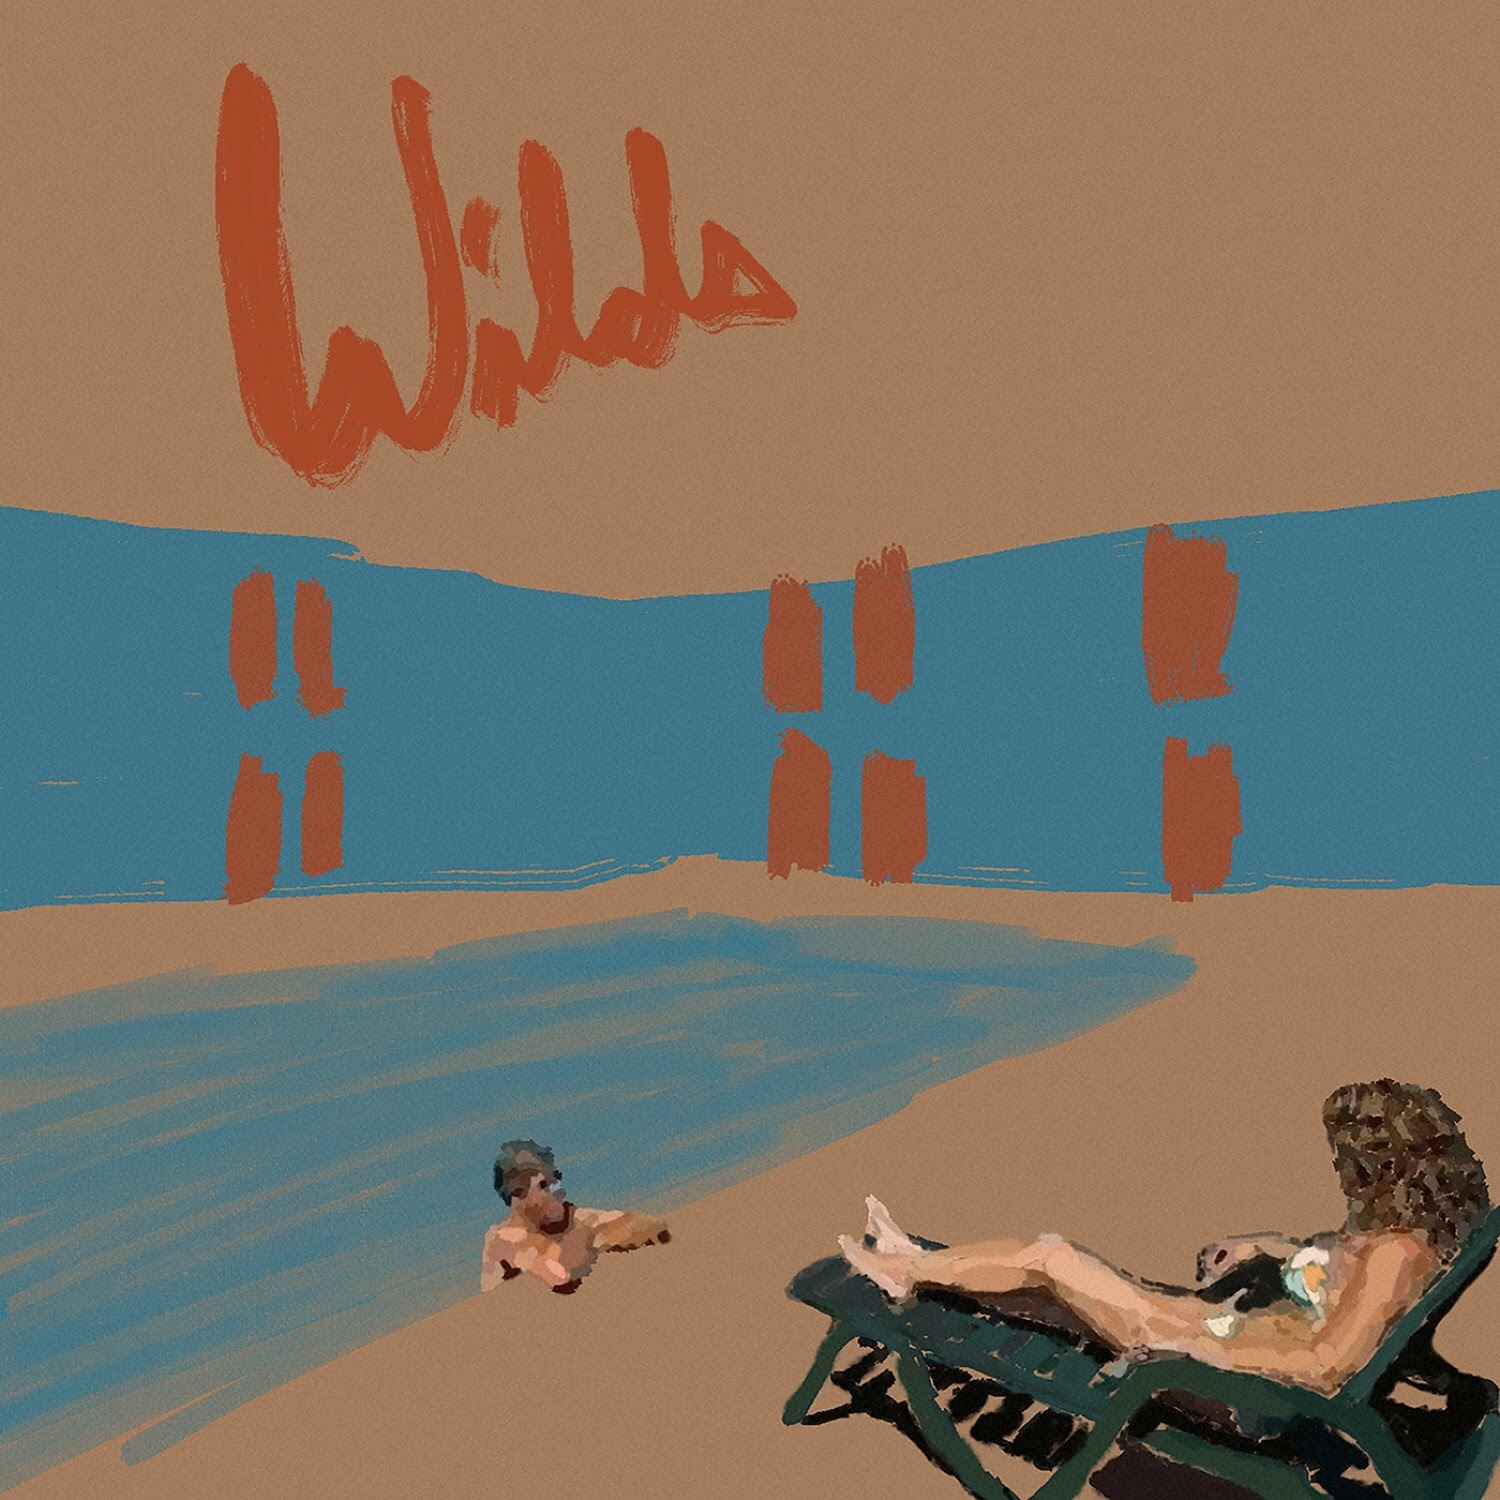 カナダのシンガーソングライター、Andy Shauf がニュー・アルバム”Wilds”を9/24にリリース。